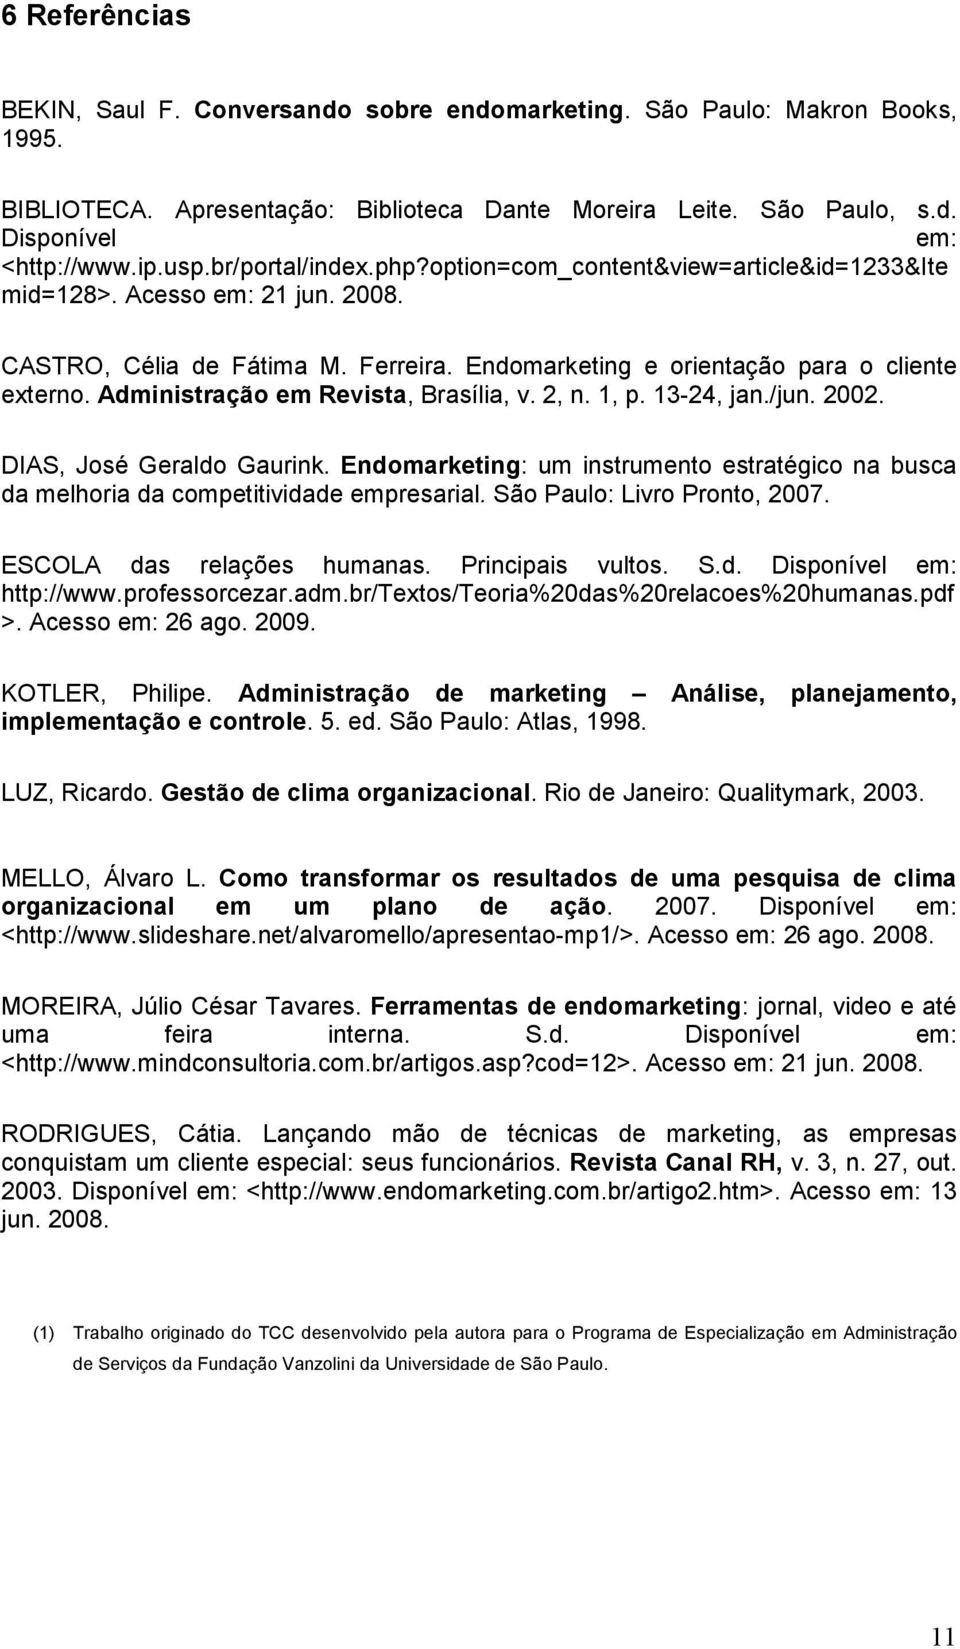 Administração em Revista, Brasília, v. 2, n. 1, p. 13-24, jan./jun. 2002. DIAS, José Geraldo Gaurink. Endomarketing: um instrumento estratégico na busca da melhoria da competitividade empresarial.